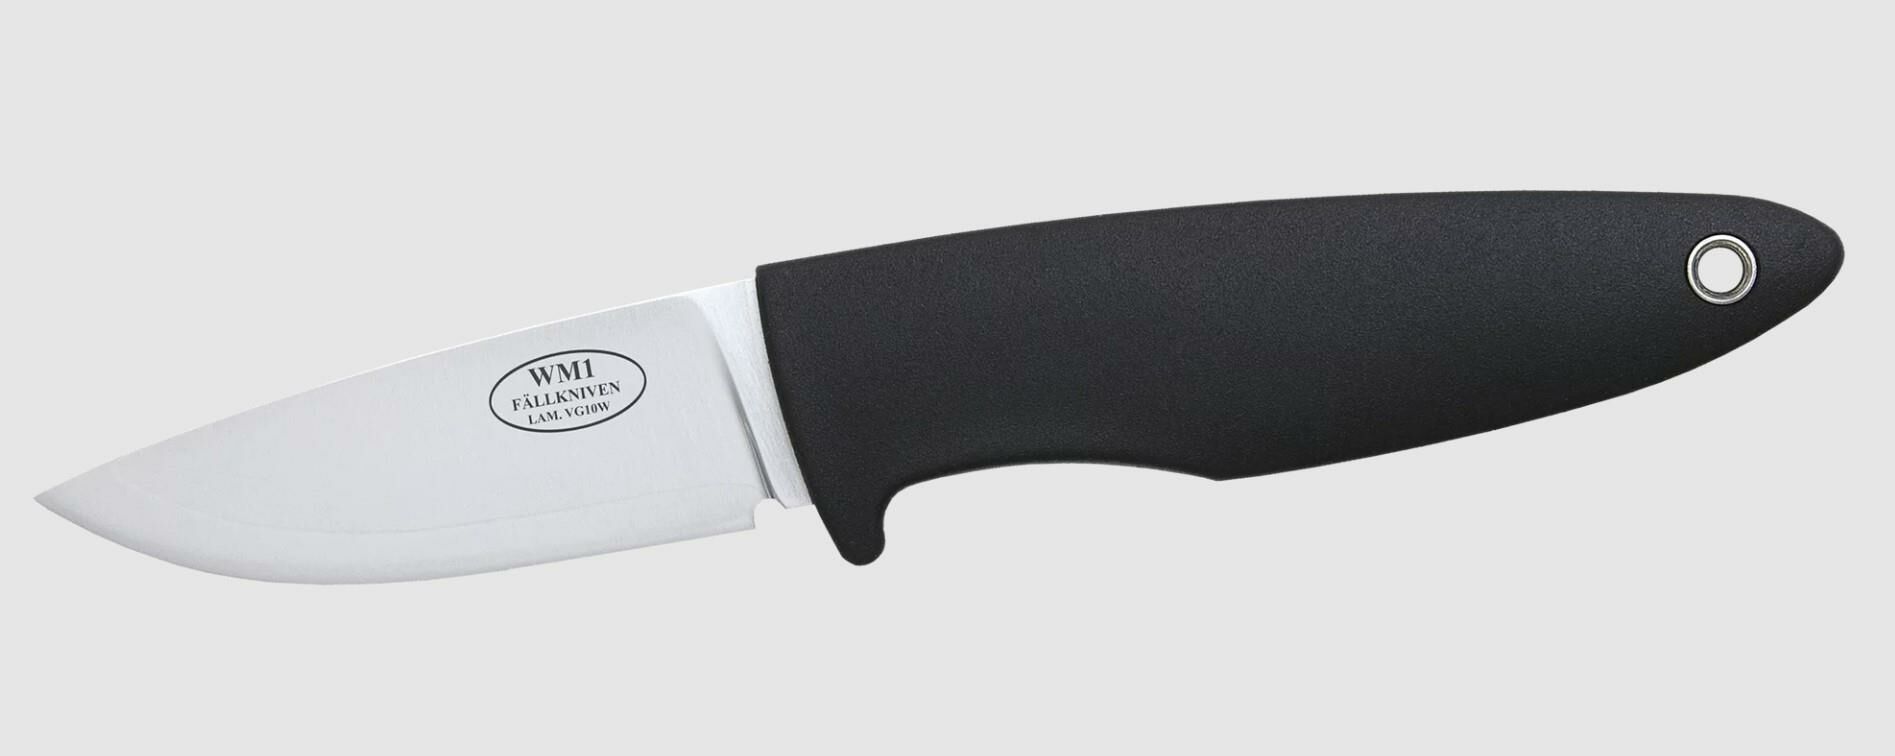 Fallkniven WM1L Bıçak